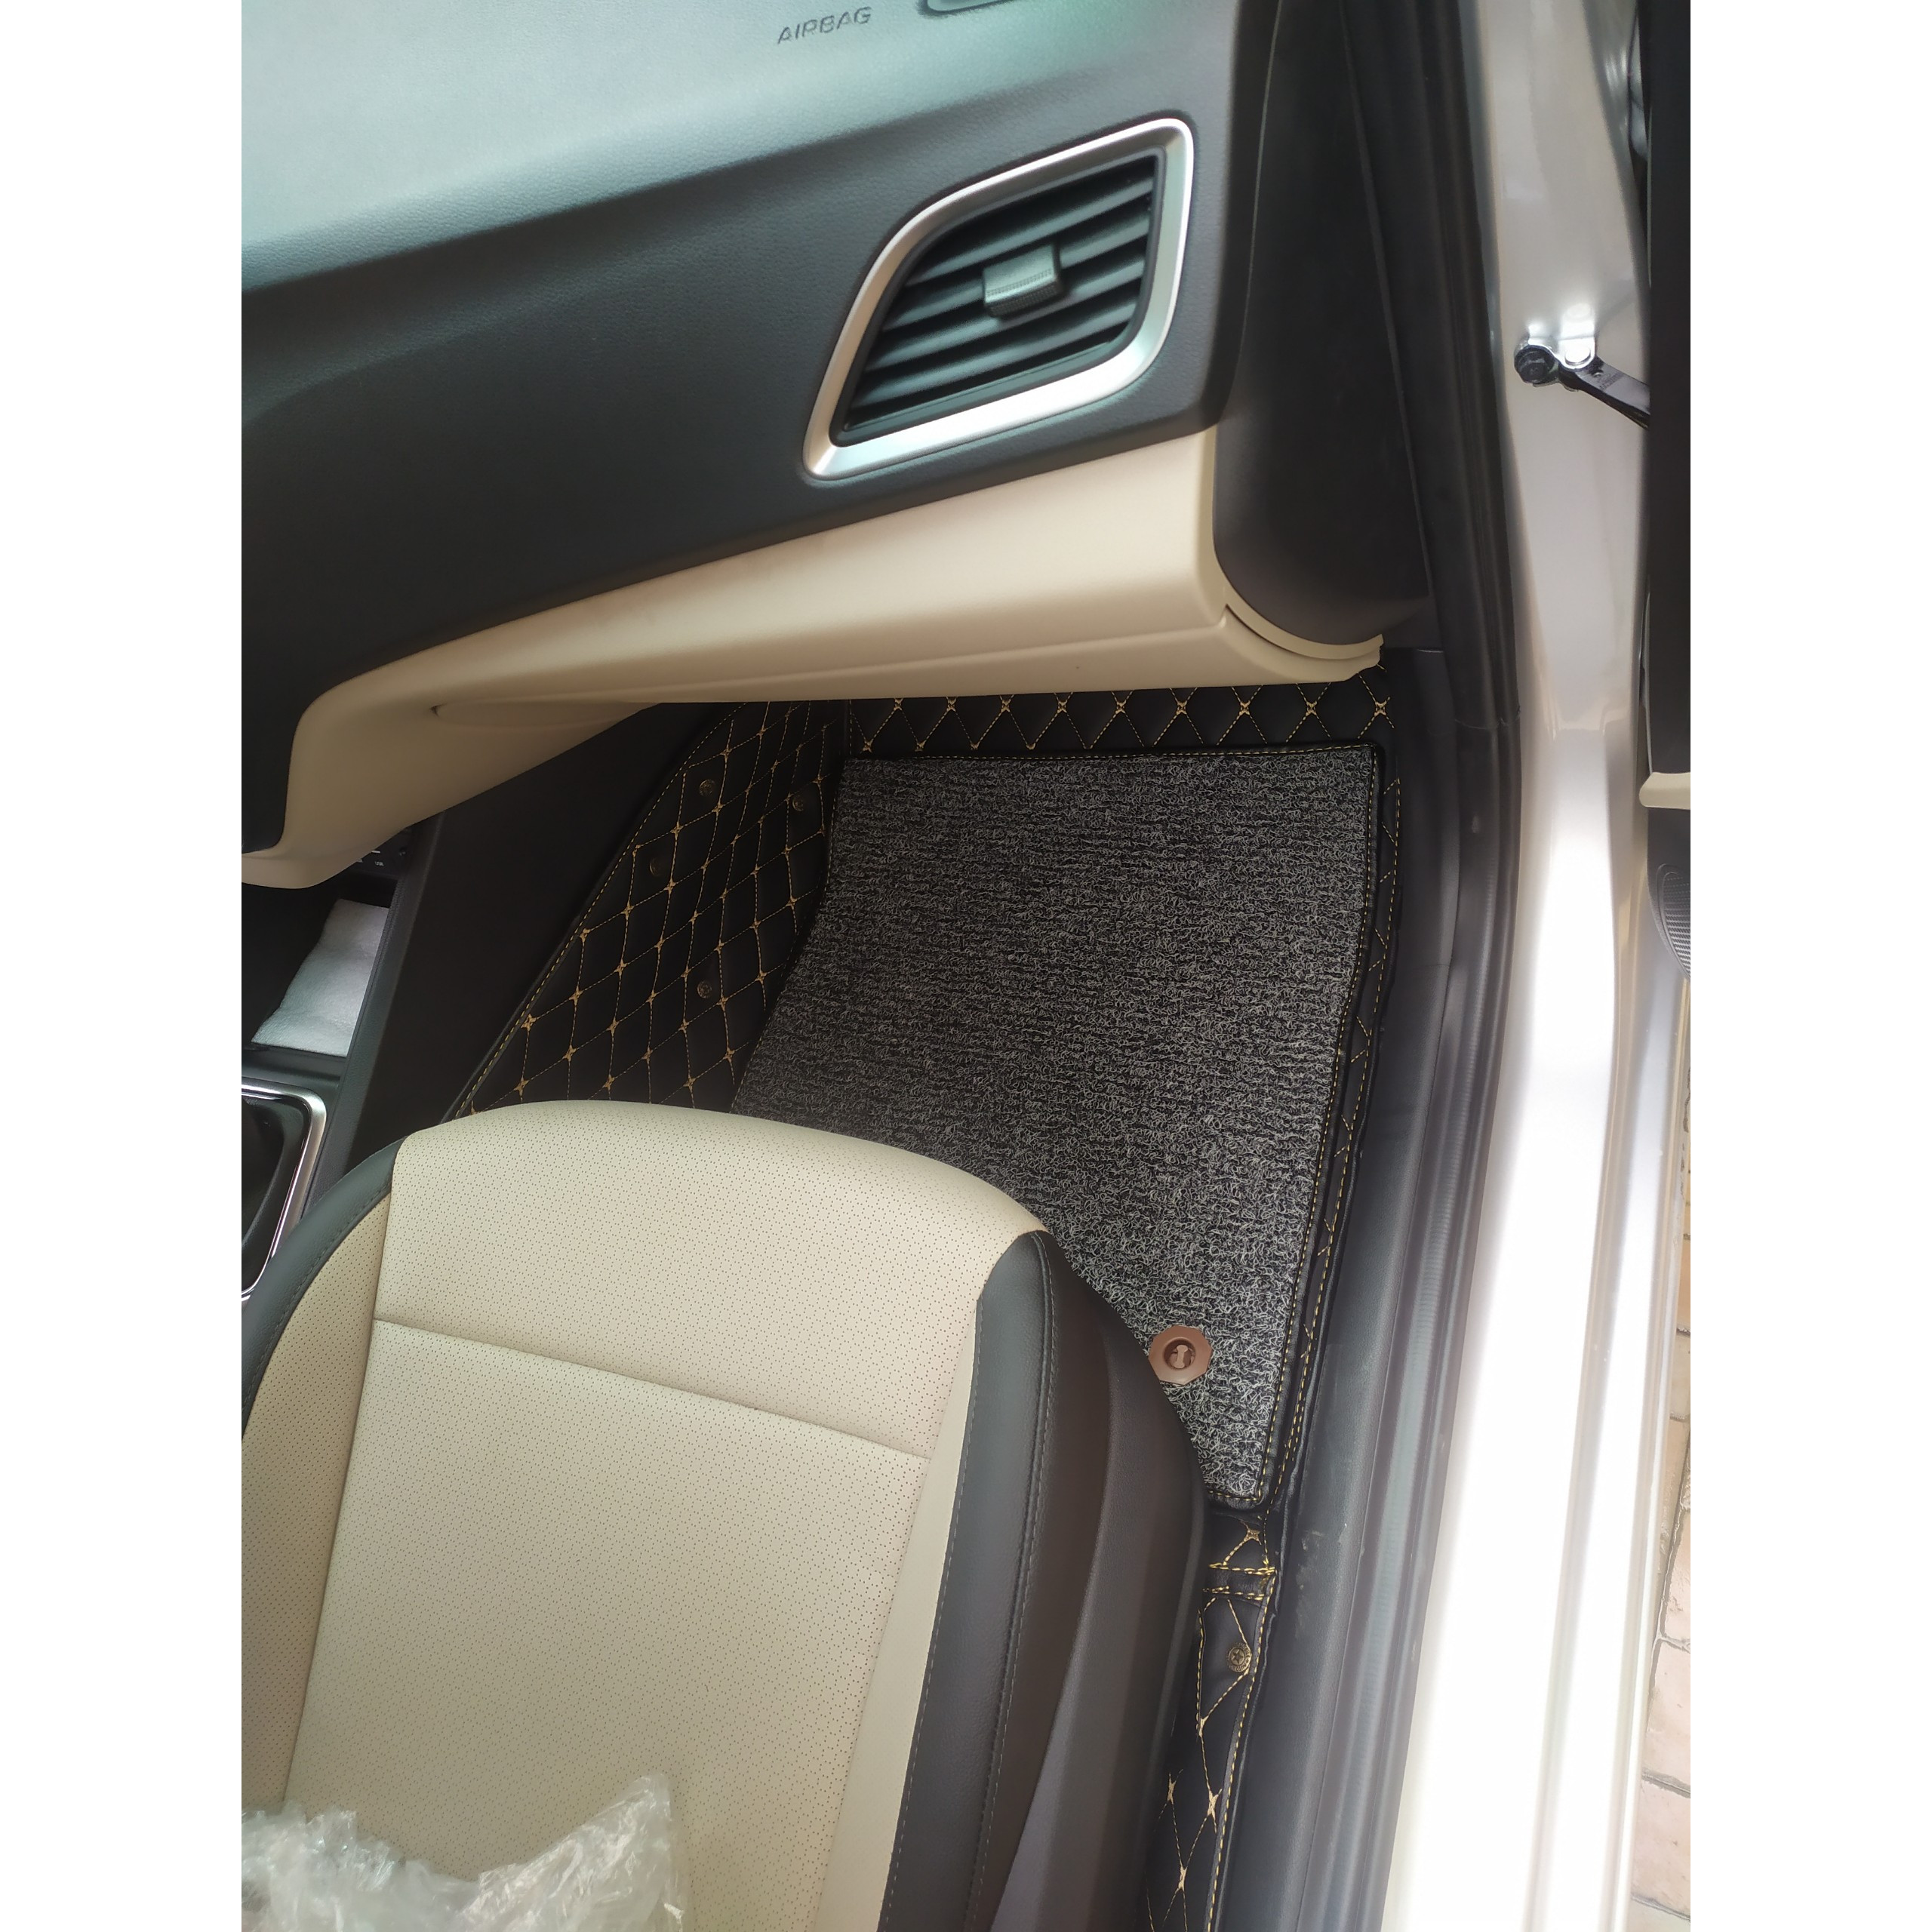 Thảm sàn ô tô 6D dành cho xe Huyndai accent 2020 da Thường màu T1.3 + R3 hình ảnh thật chụp bằng điện thoại không chỉnh sửa có video hướng dẫn lắp đặt tại nhà